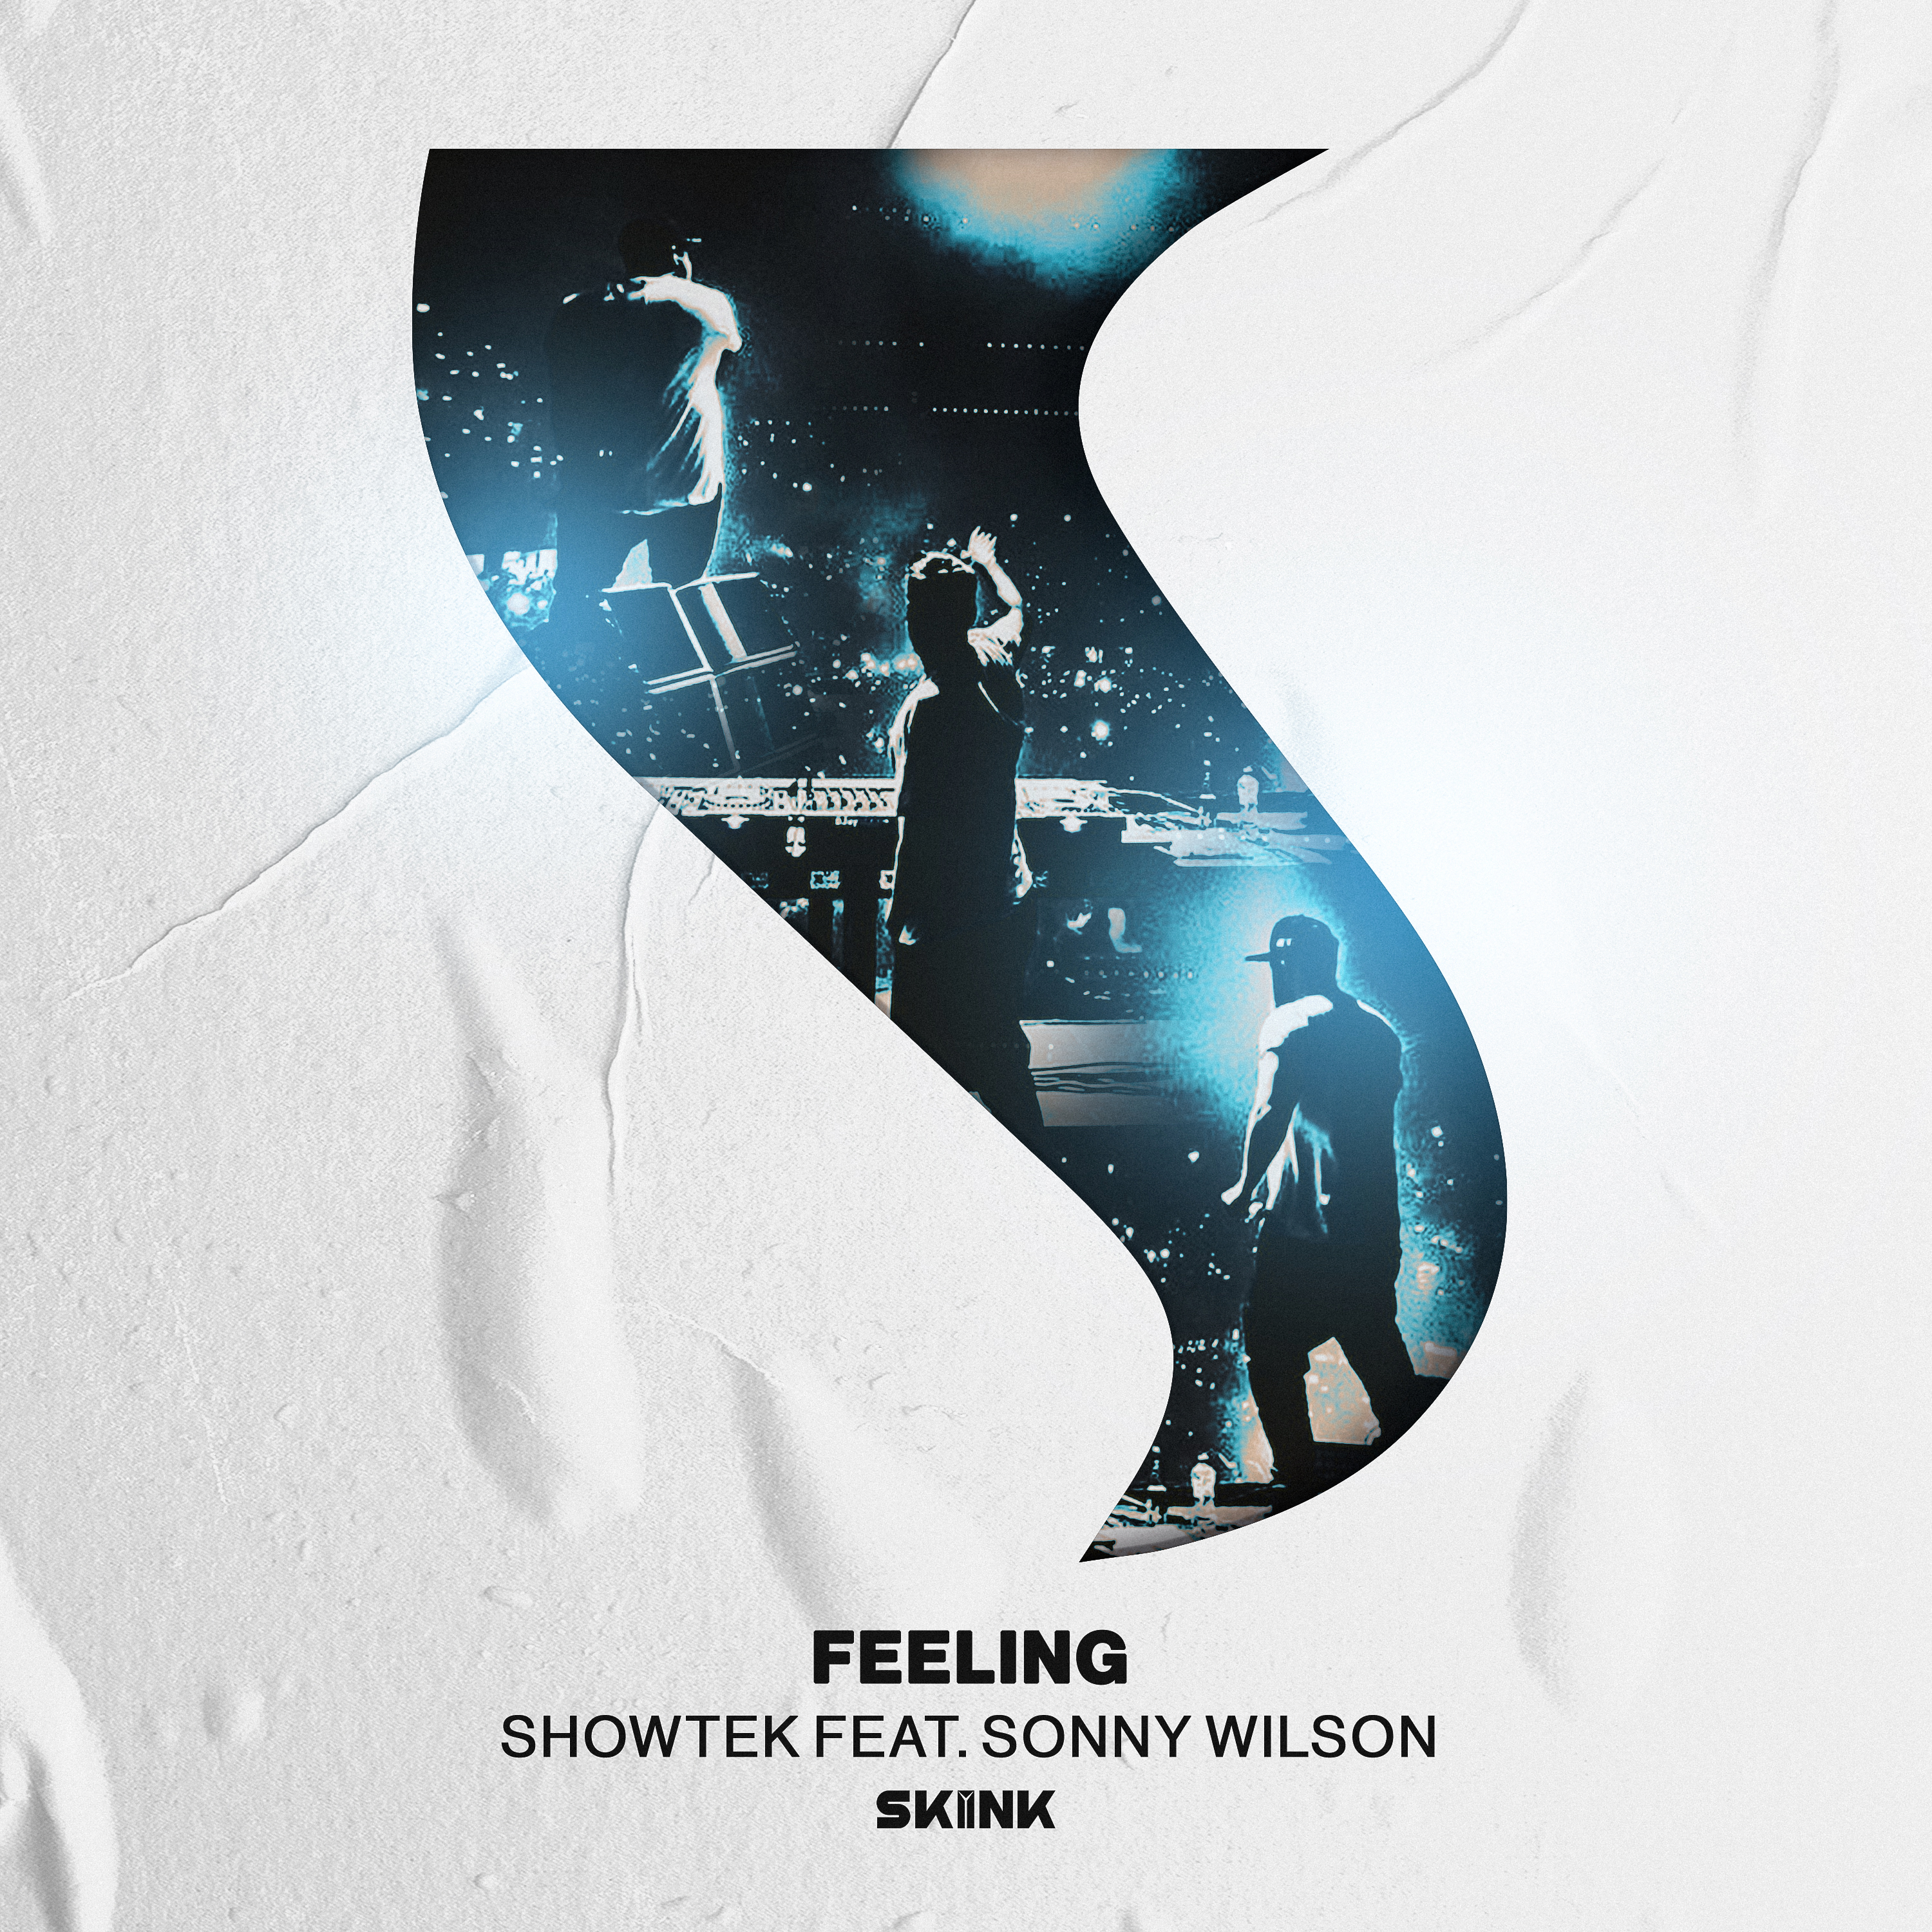 Showtek featuring Sonny Wilson — Feeling cover artwork